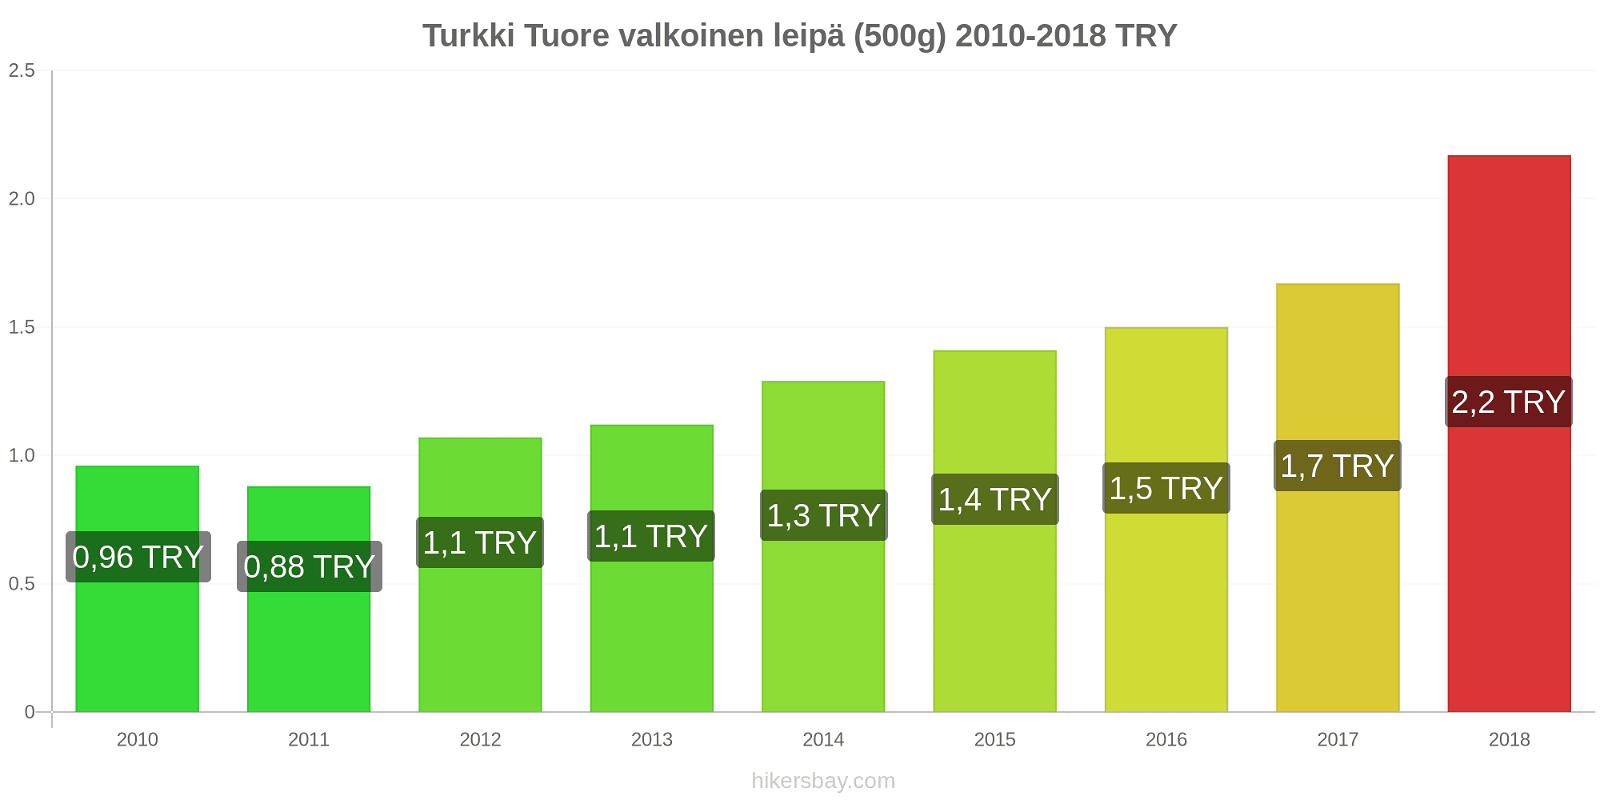 Turkki hintojen muutokset Tuore valkoinen leipä (500g) hikersbay.com